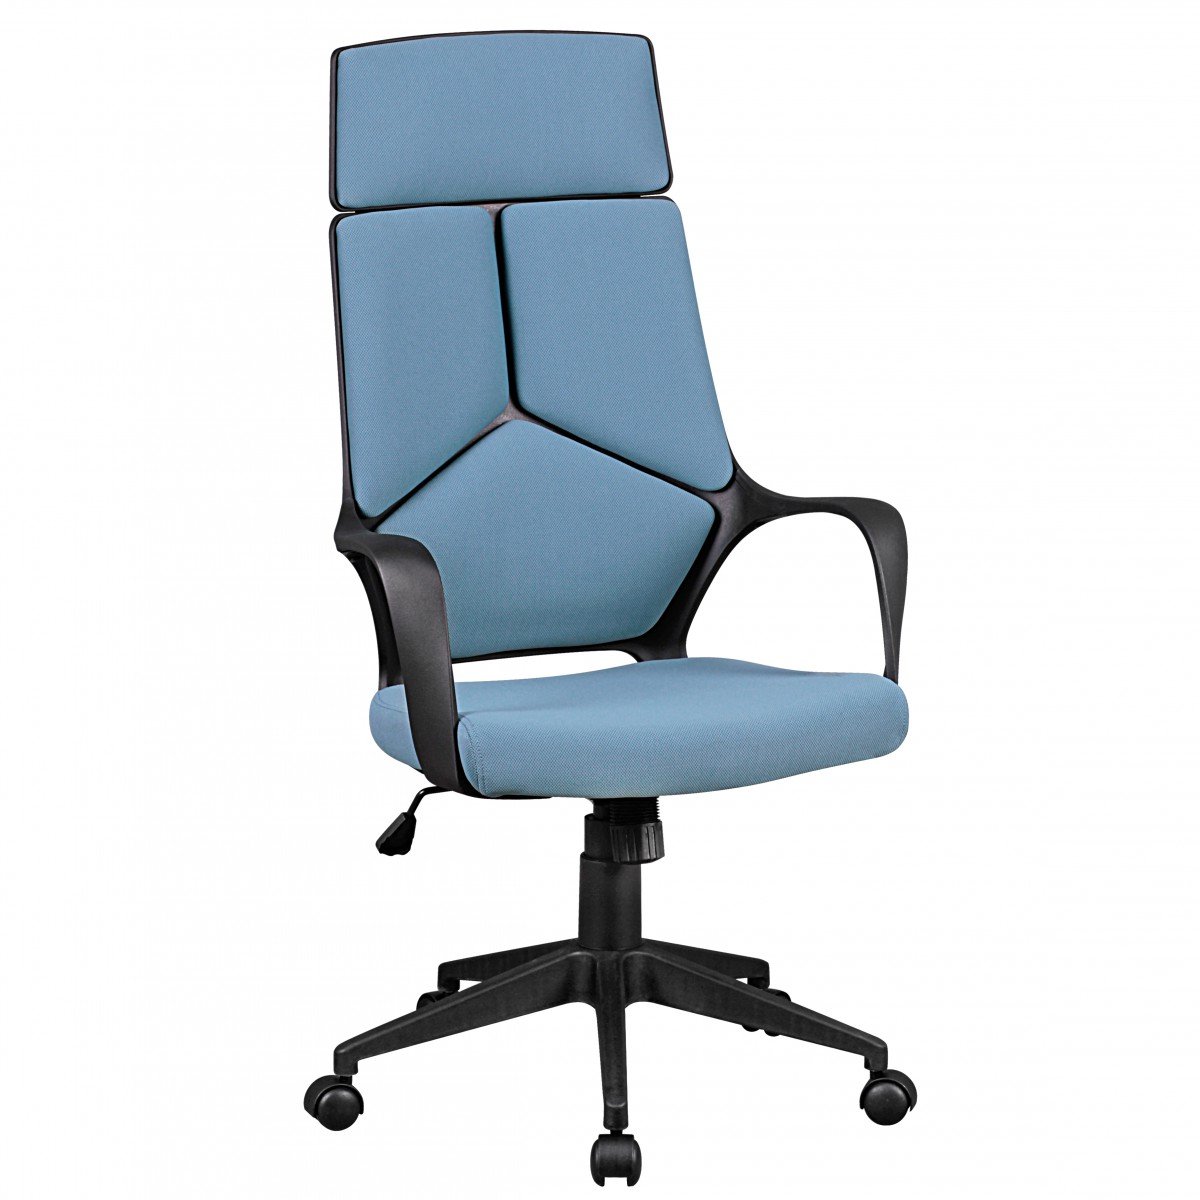 AMSTYLE Bürostuhl Bezug Stoff Blau Schreibtischstuhl Design 120 kg Chefsessel ergonomisch hohe Rücken-Lehne Drehstuhl höhenverstellbar mit Wippmechanik & Armlehnen Kopfstütze X-XL Hochlehner